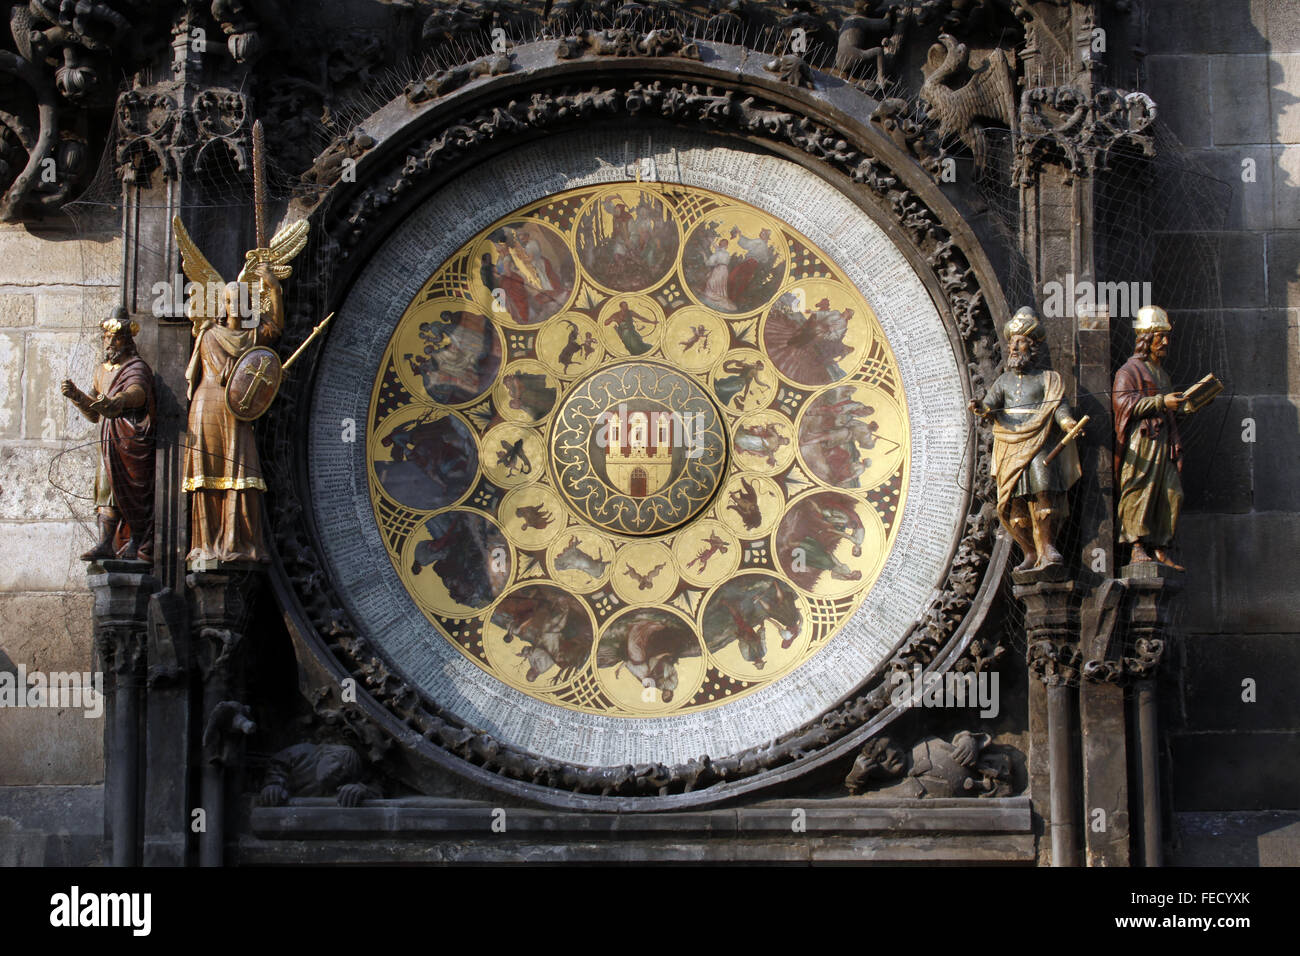 Berühmte mittelalterliche astronomische Uhr in Prag, Tschechische Republik Stockfoto